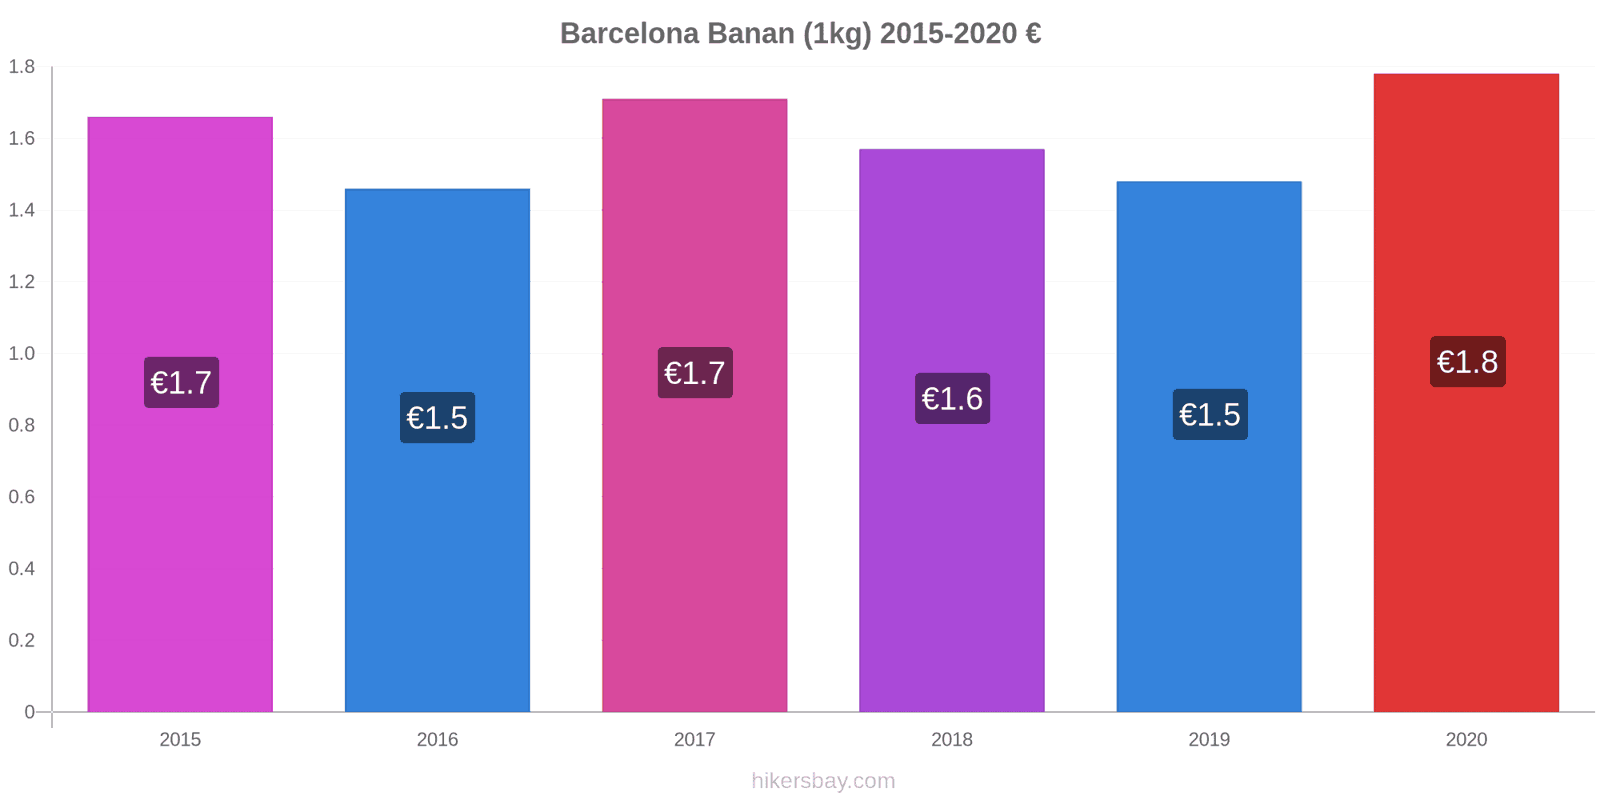 Barcelona prisændringer Banan (1kg) hikersbay.com